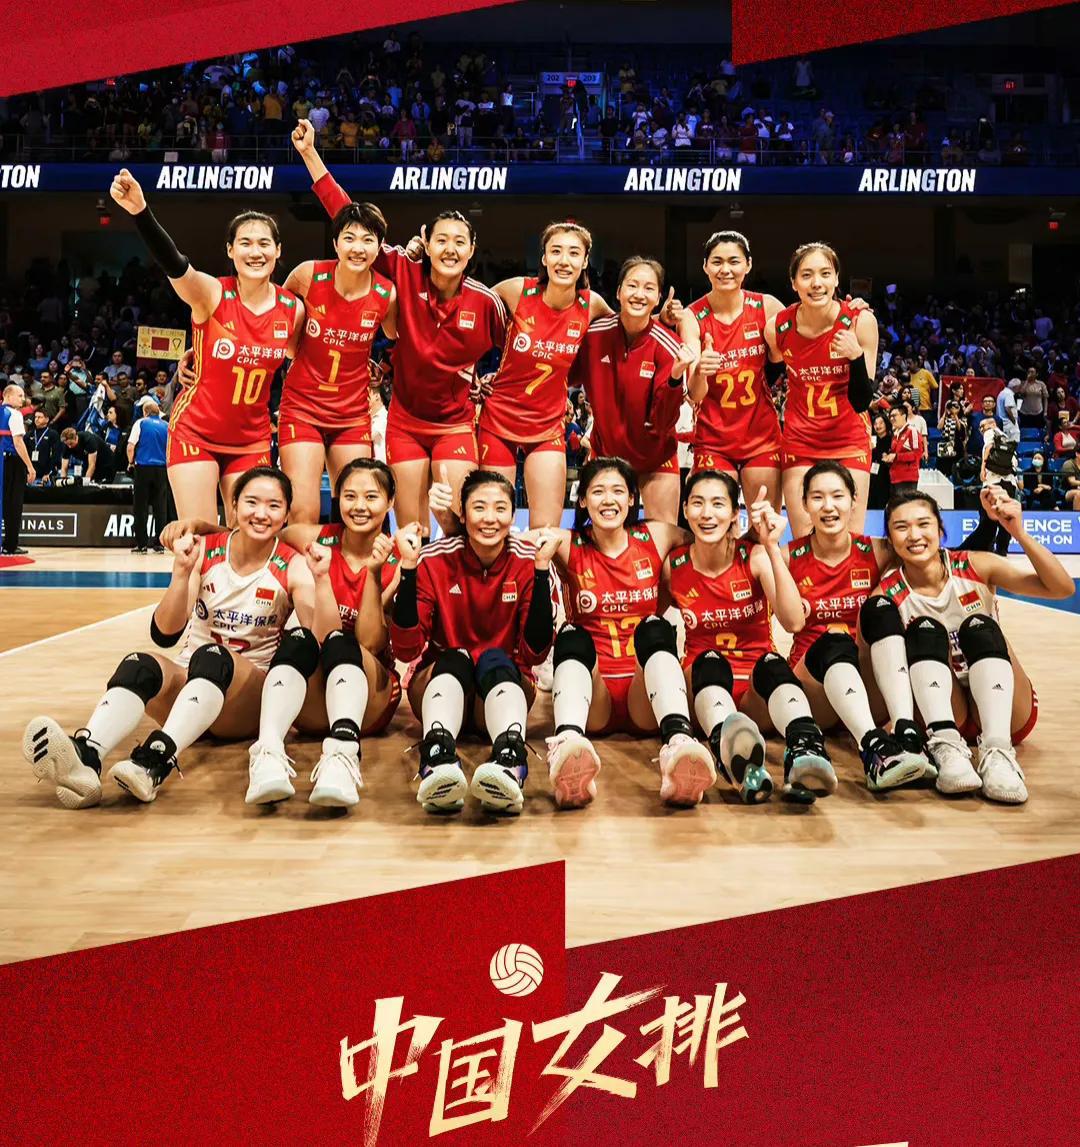 中国女排3:1巴西，强势进入四强，剧情开始清晰了

半决赛
中国3:0 波兰  